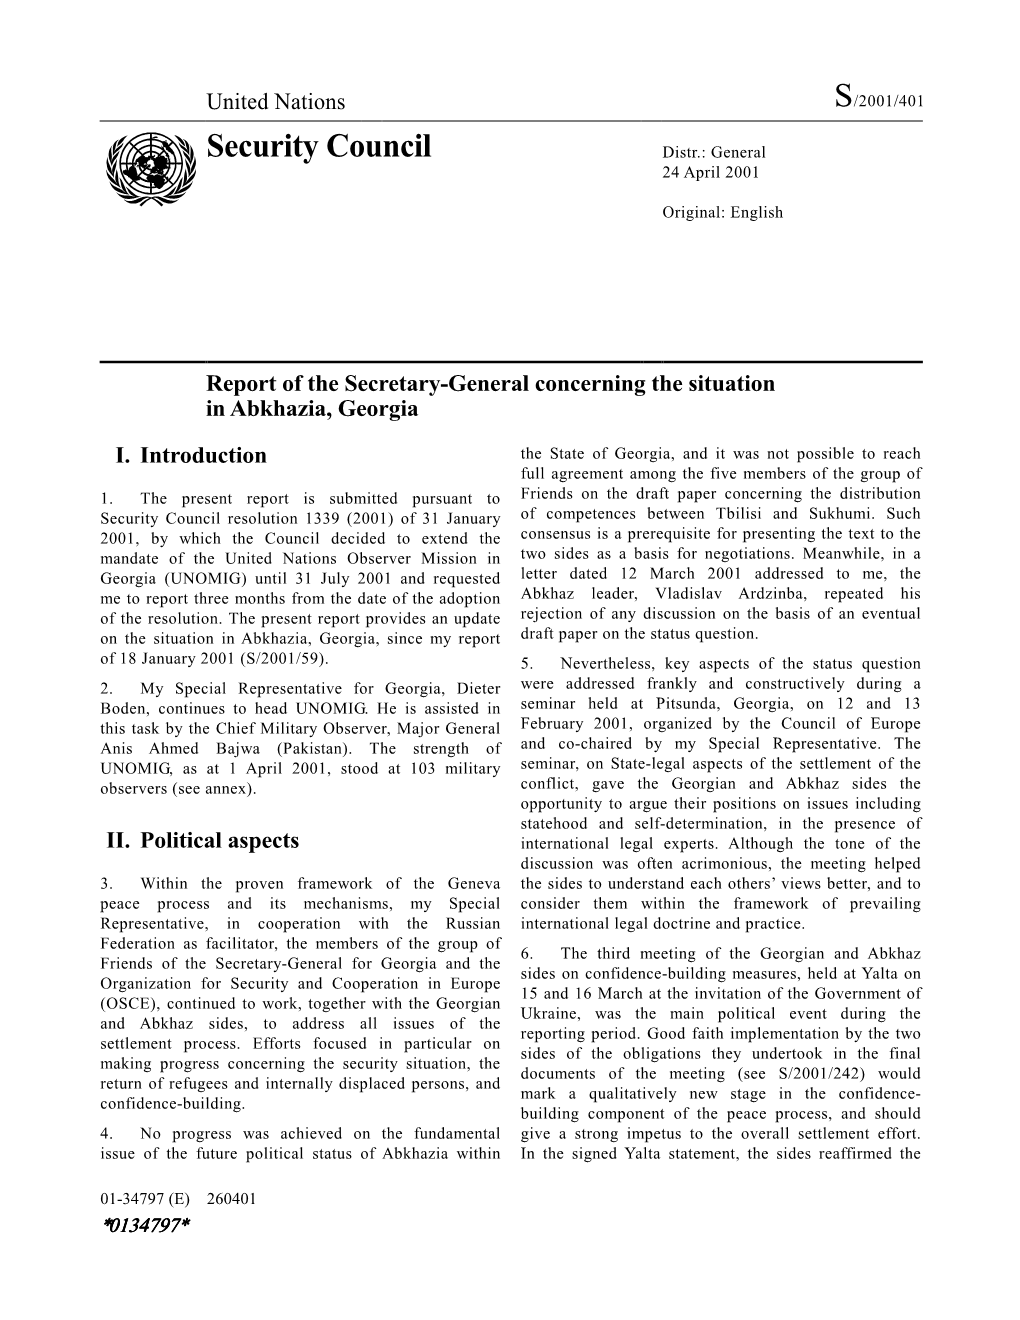 Security Council Distr.: General 24 April 2001